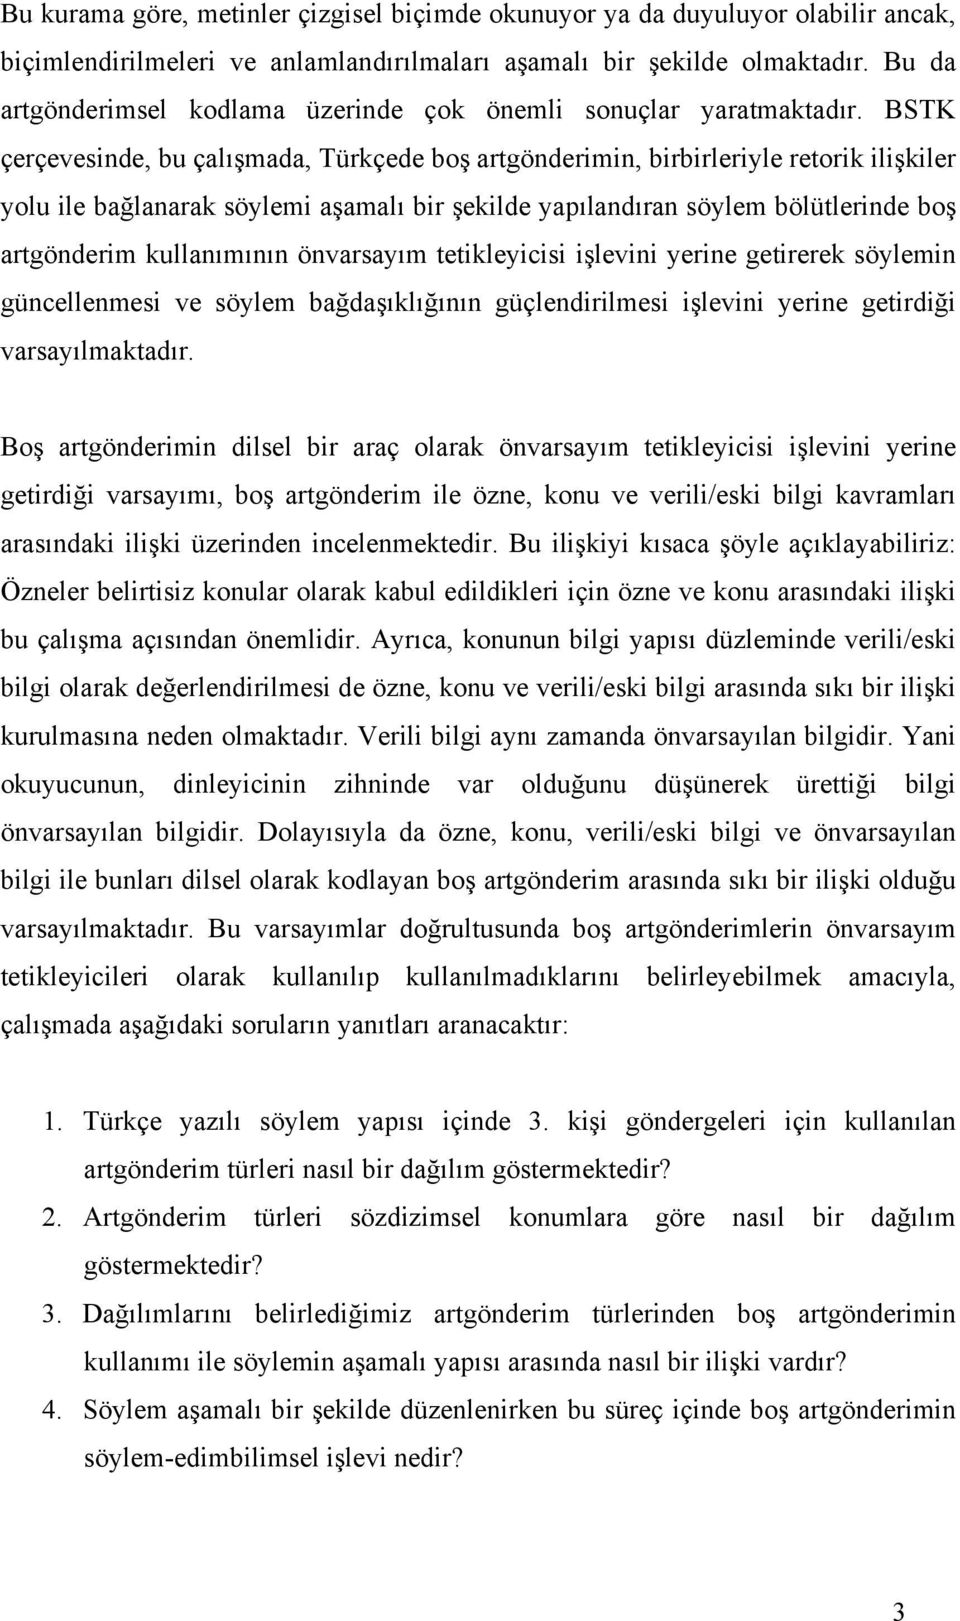 BSTK çerçevesinde, bu çalışmada, Türkçede boş artgönderimin, birbirleriyle retorik ilişkiler yolu ile bağlanarak söylemi aşamalı bir şekilde yapılandıran söylem bölütlerinde boş artgönderim